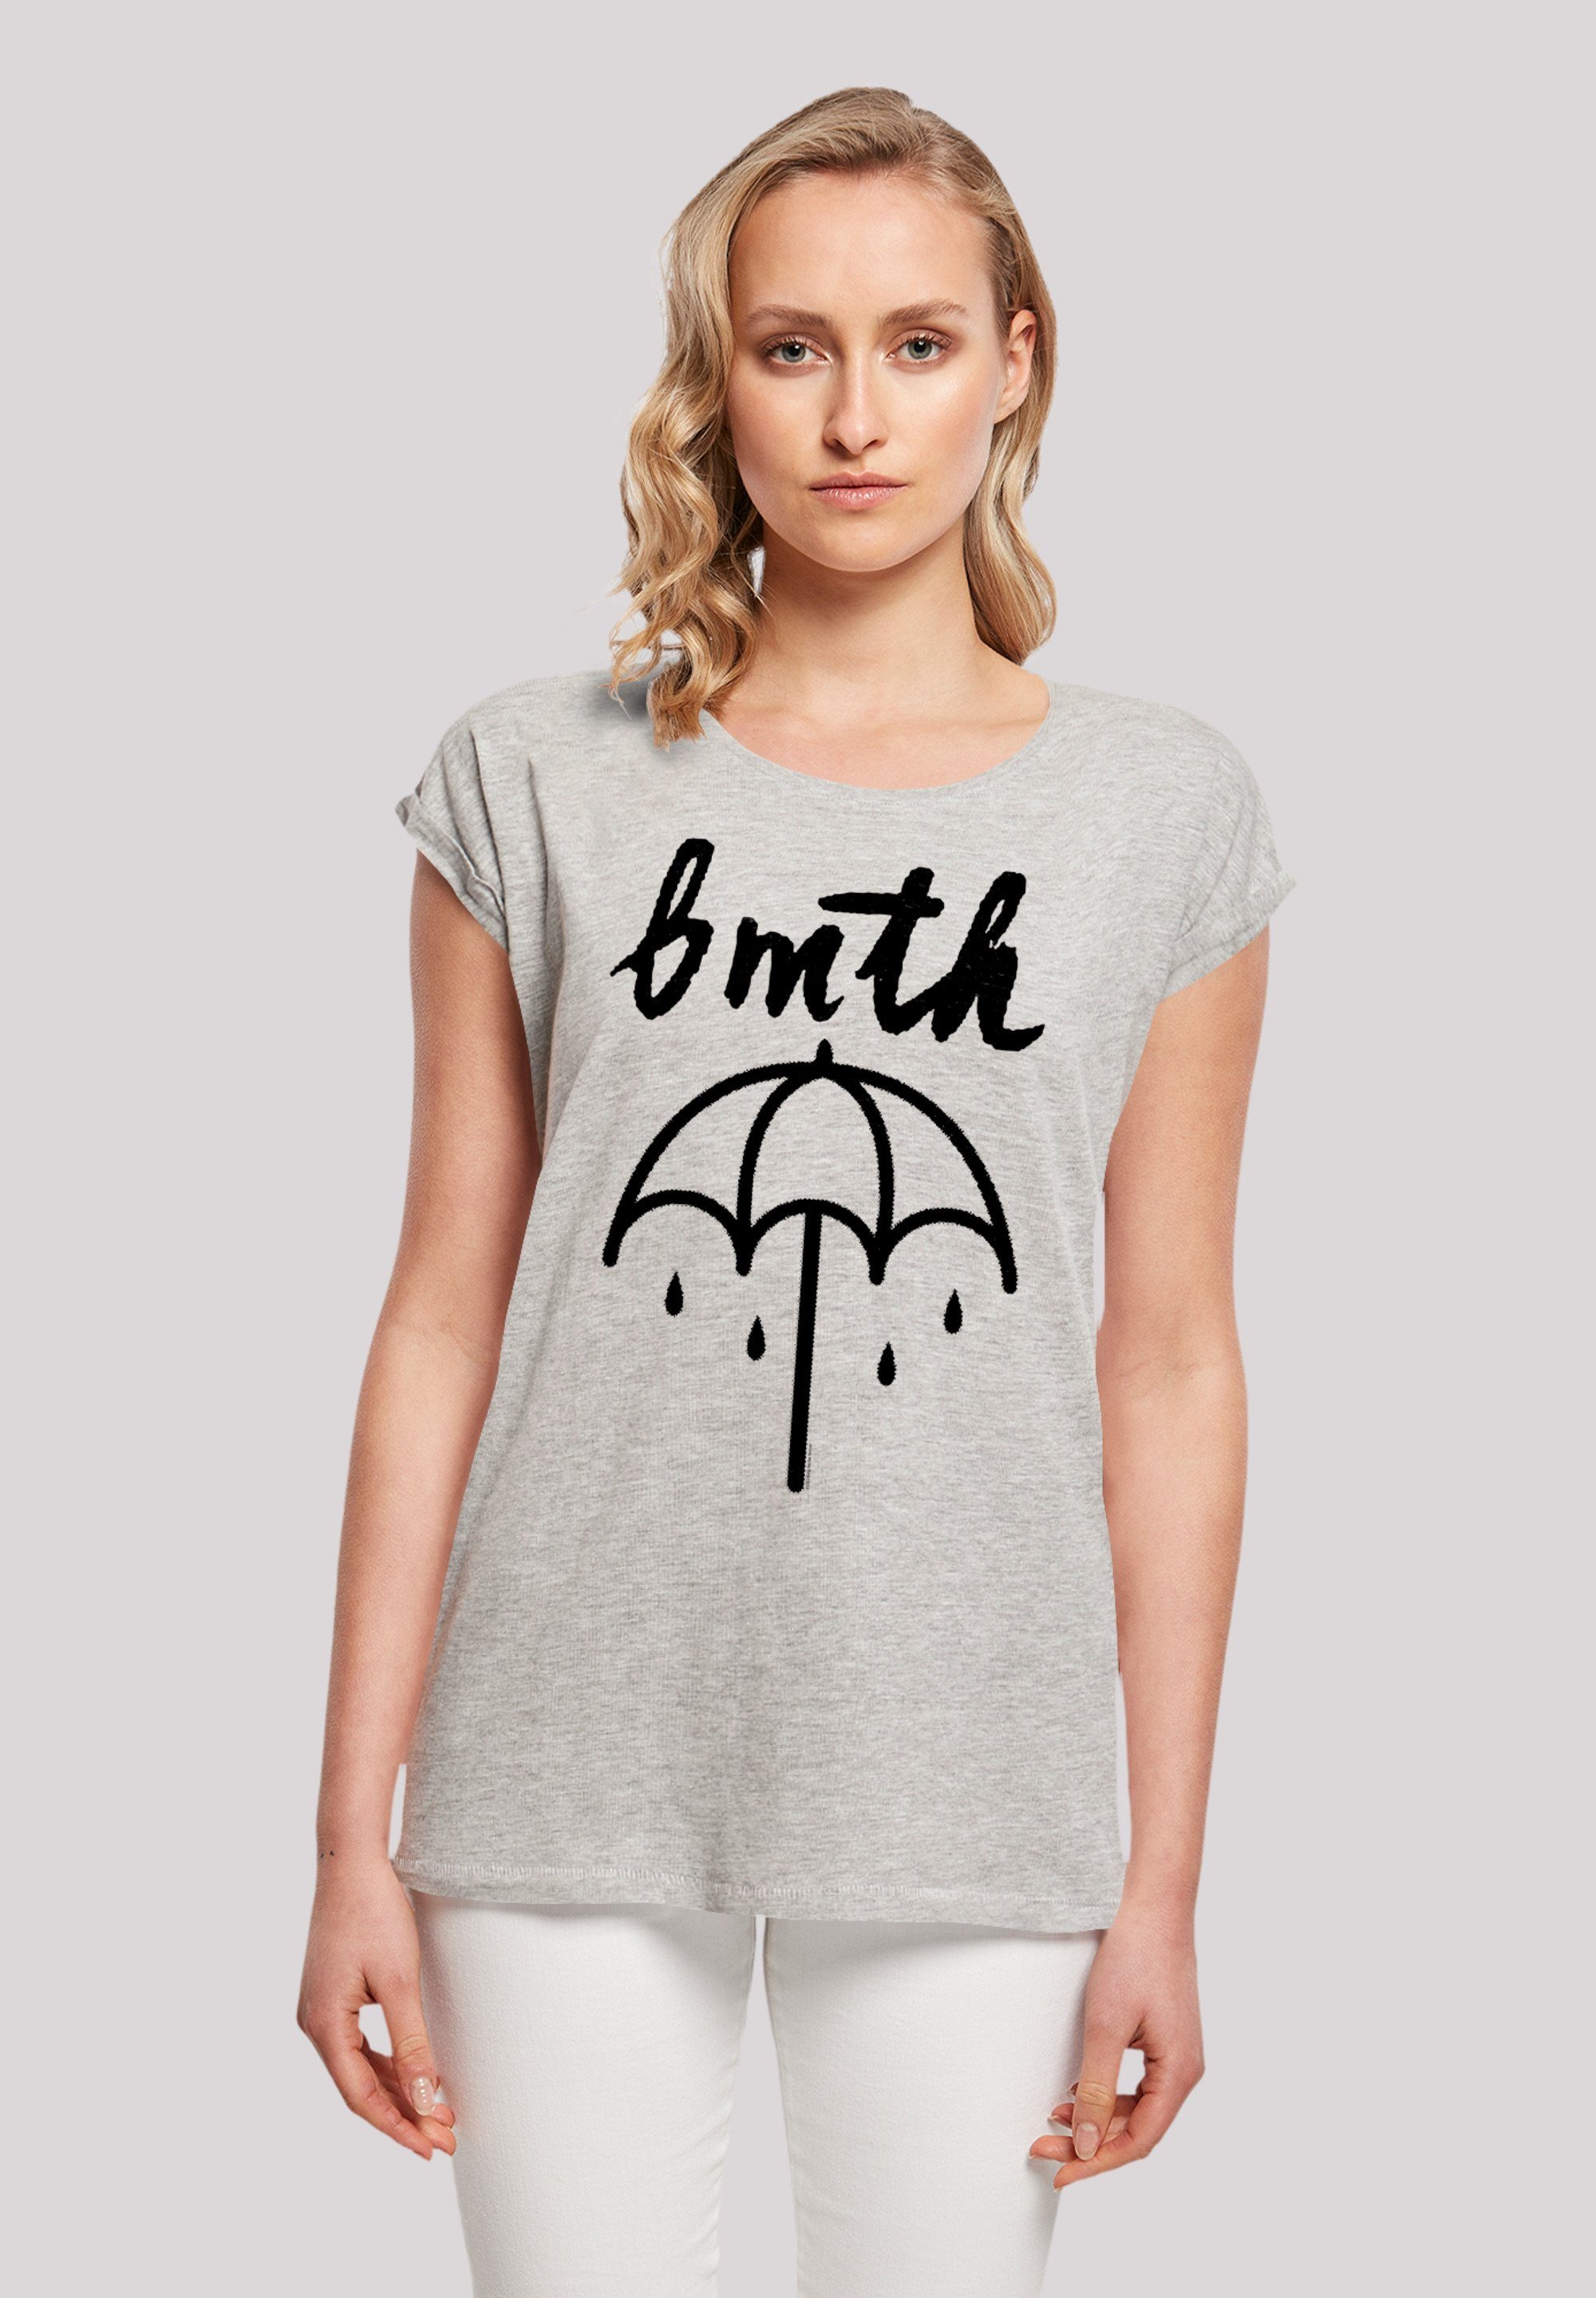 F4NT4STIC T-Shirt BMTH Metal Band Umbrella Premium Qualität, Rock-Musik,  Band, Sehr weicher Baumwollstoff mit hohem Tragekomfort